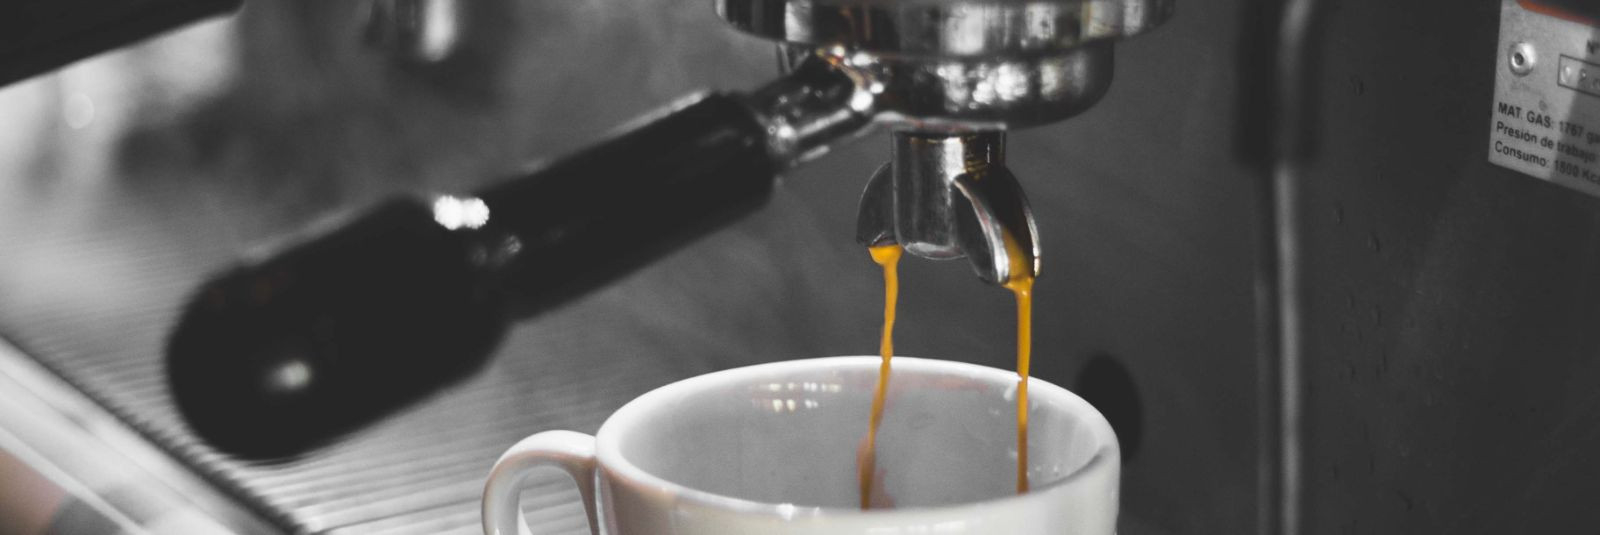 Kohvimasin on oluline tegur kohvi kvaliteedi tagamisel ning sellel on otsene mõju valmistatava joogi maitsele ja aroomile. Uurime lähemalt, kuidas kohvimasin mõ